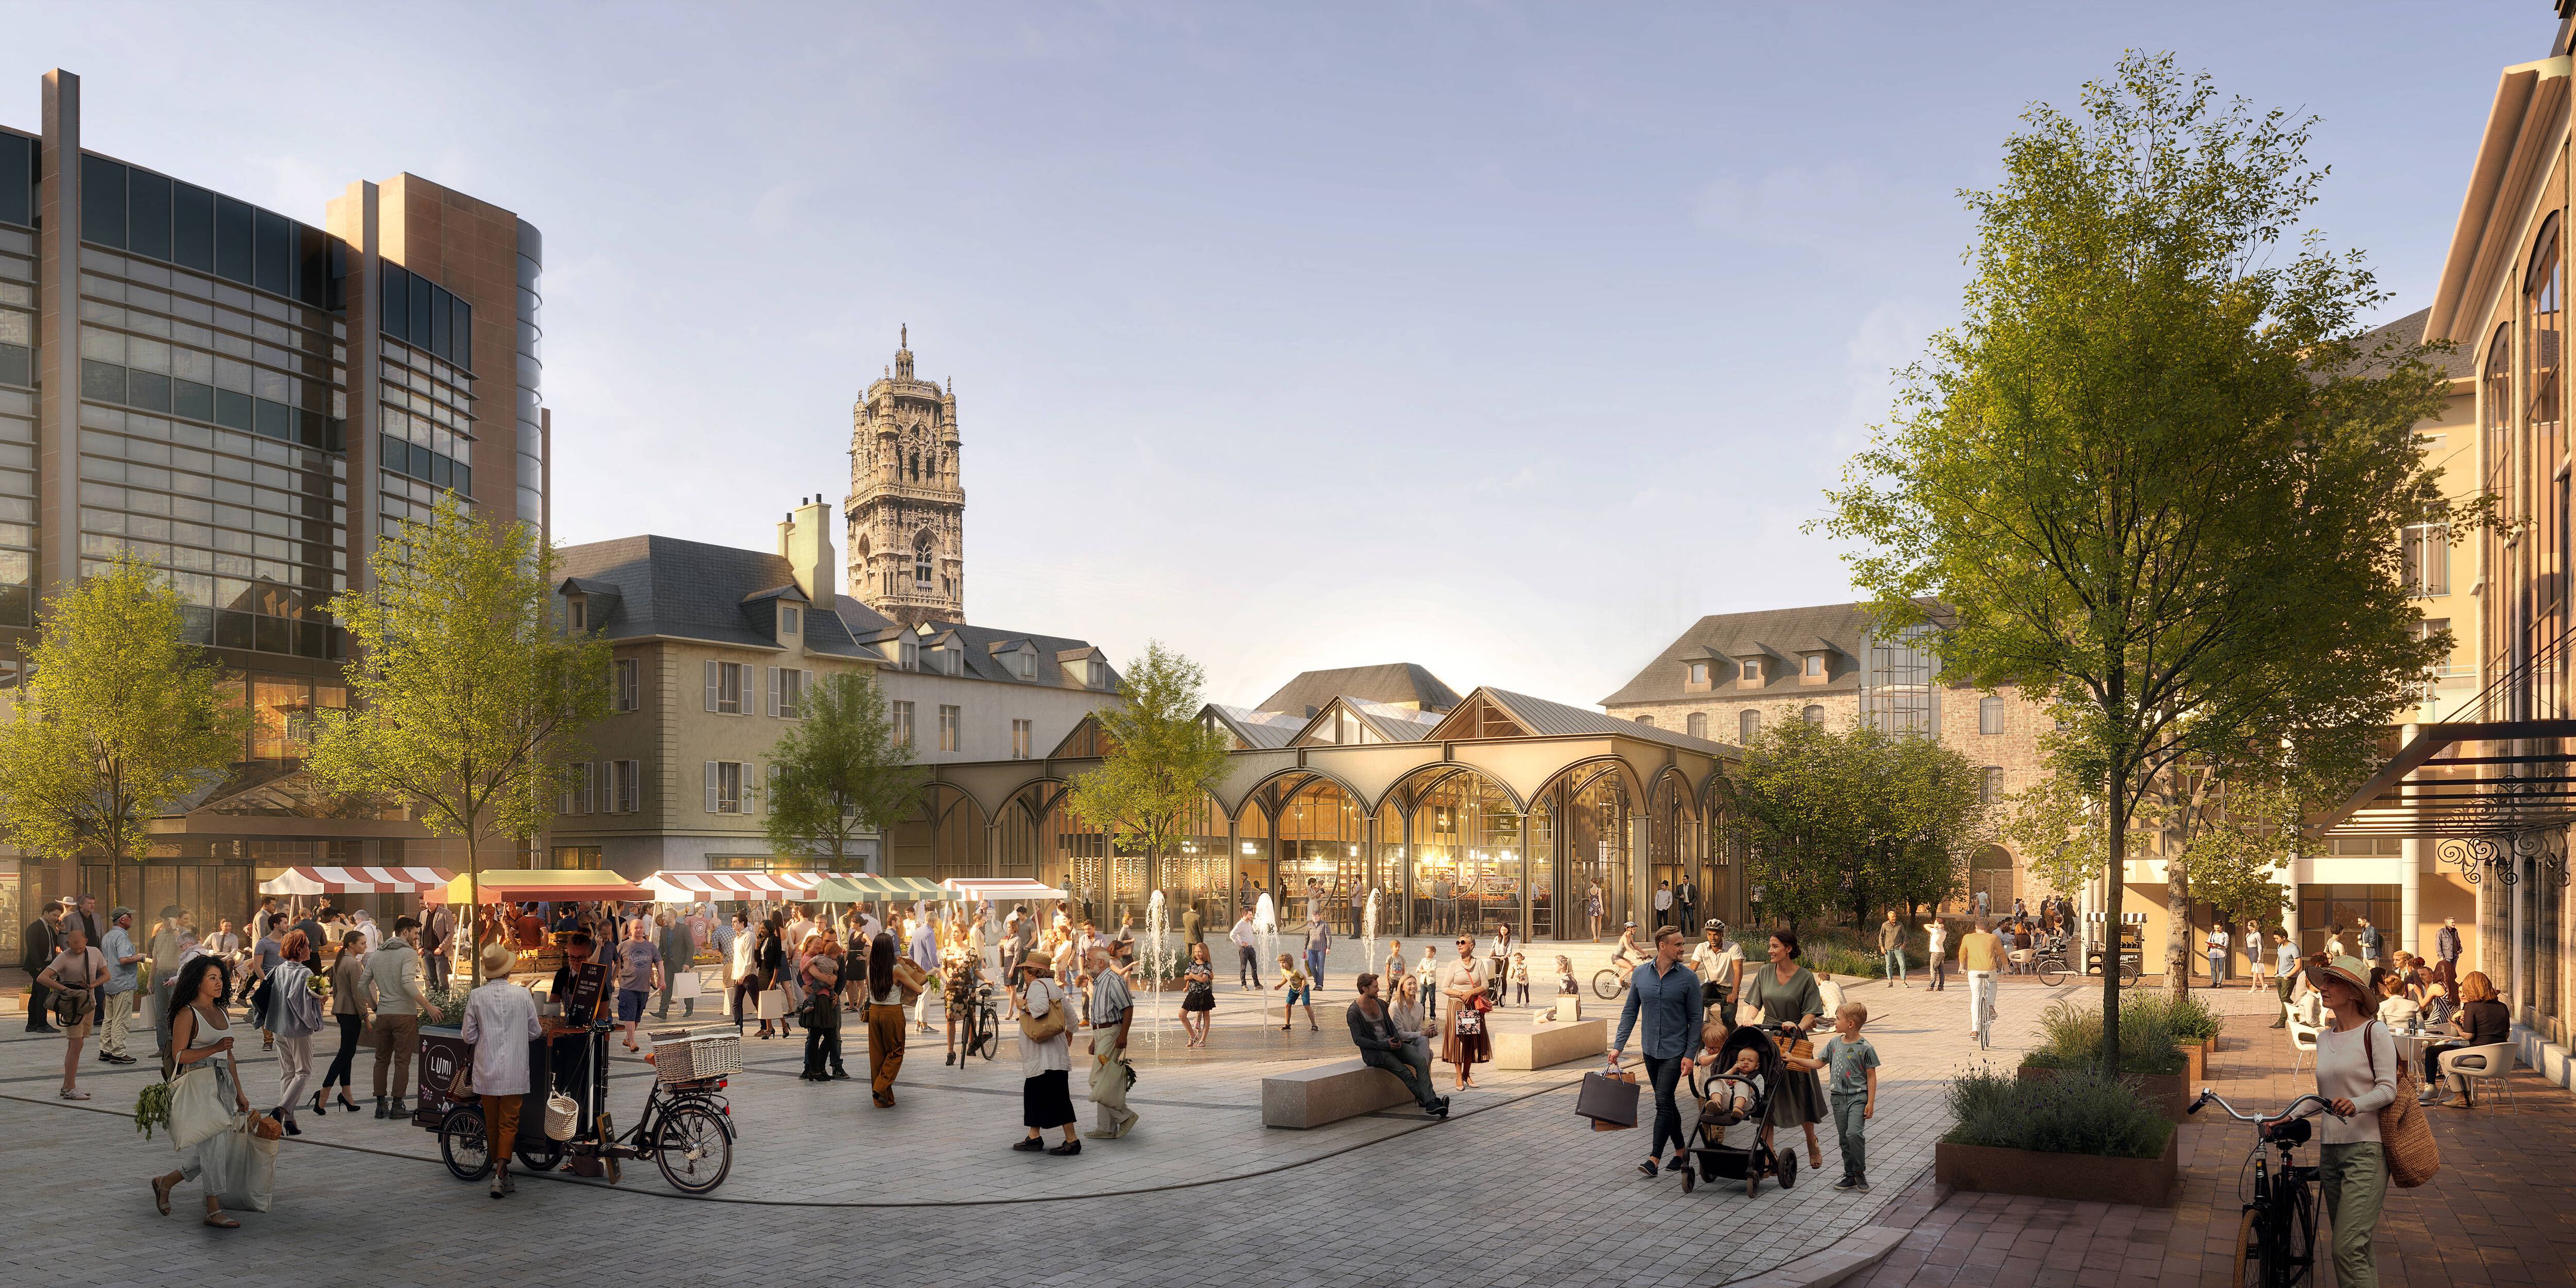 La futures halle marchande de Rodez doit voir le jour en 2025. (Photo : Leibar Seigneurin architectes / Atelier Montal Mestiri)